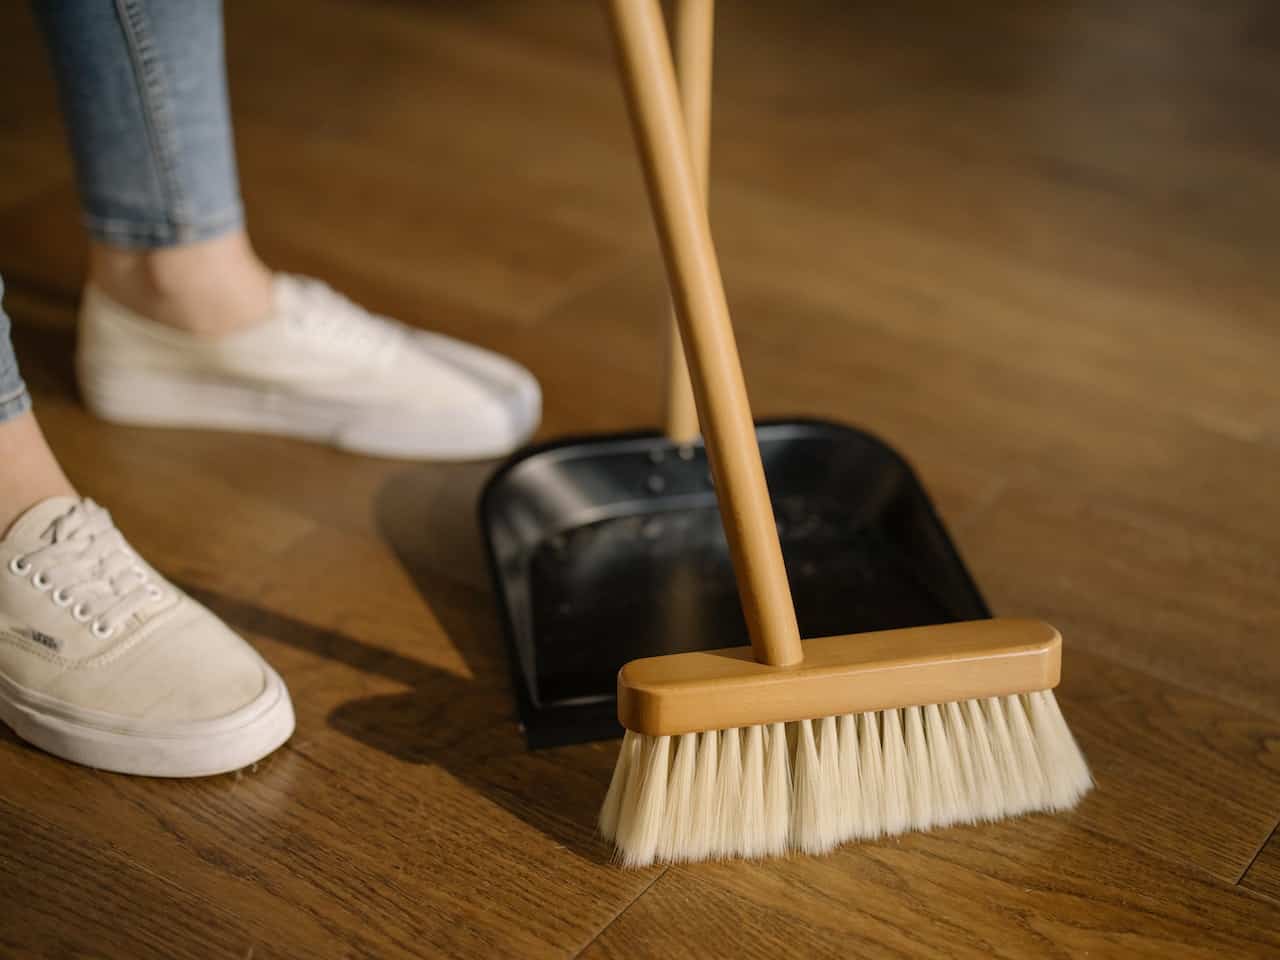 Jakie środki czystości powinny znaleźć się w każdym domu?